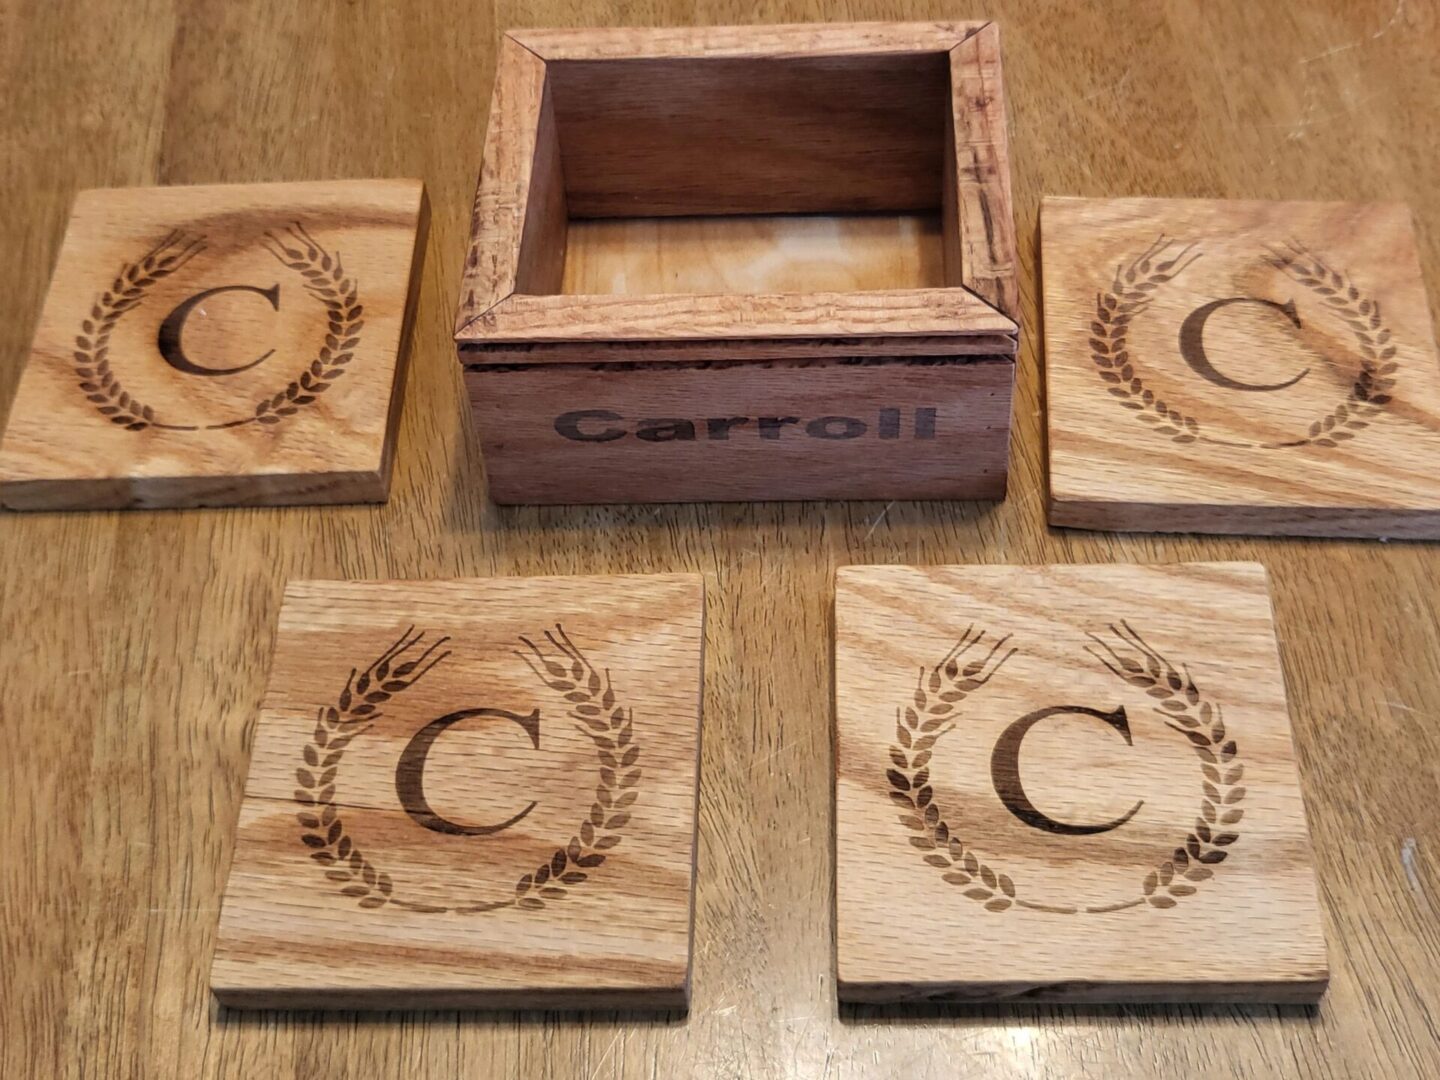 Carroll wooden plates